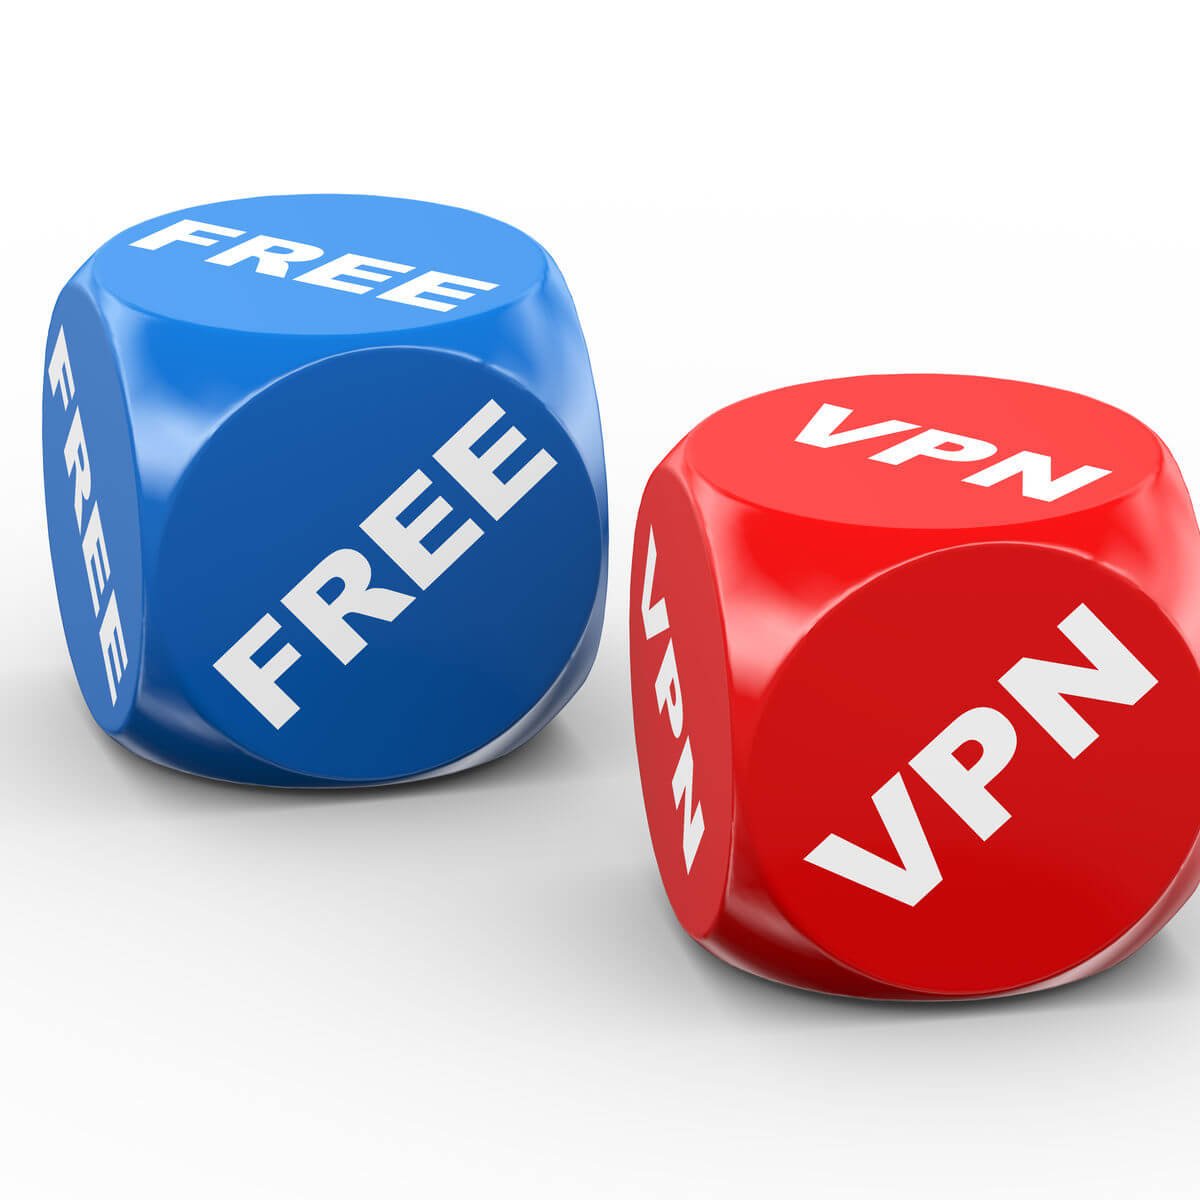 VPN gratuits sans inscription